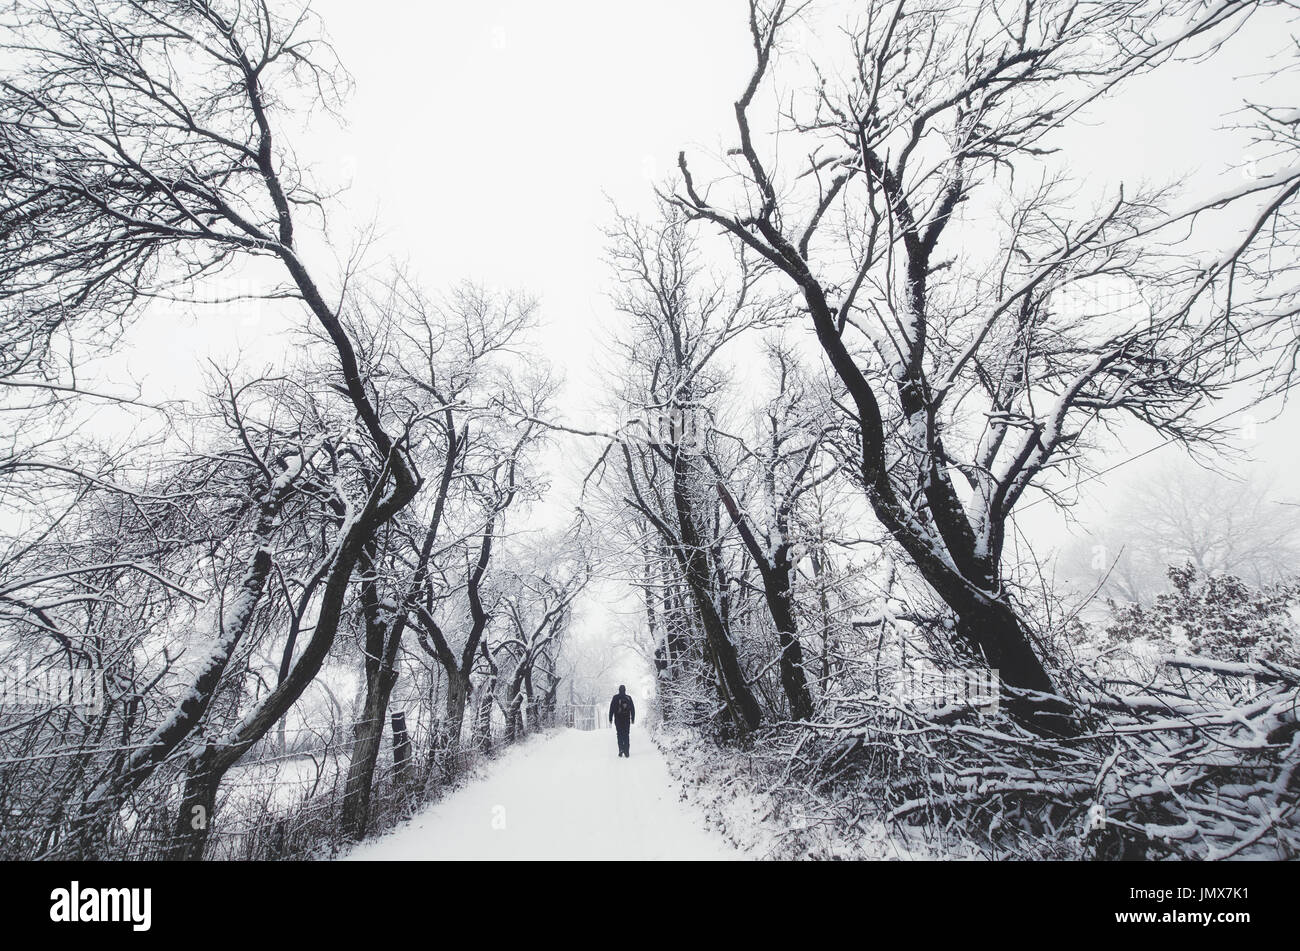 Homme marchant sur le chemin entre les arbres enneigés effrayant en hiver, Imaginaire Paysage Banque D'Images